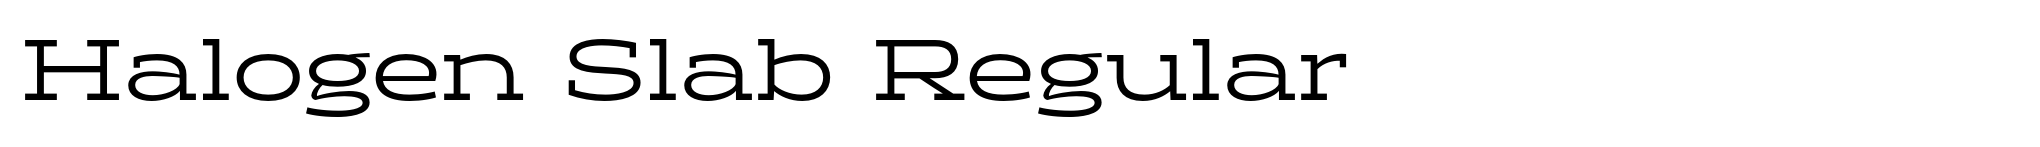 Halogen Slab Regular image